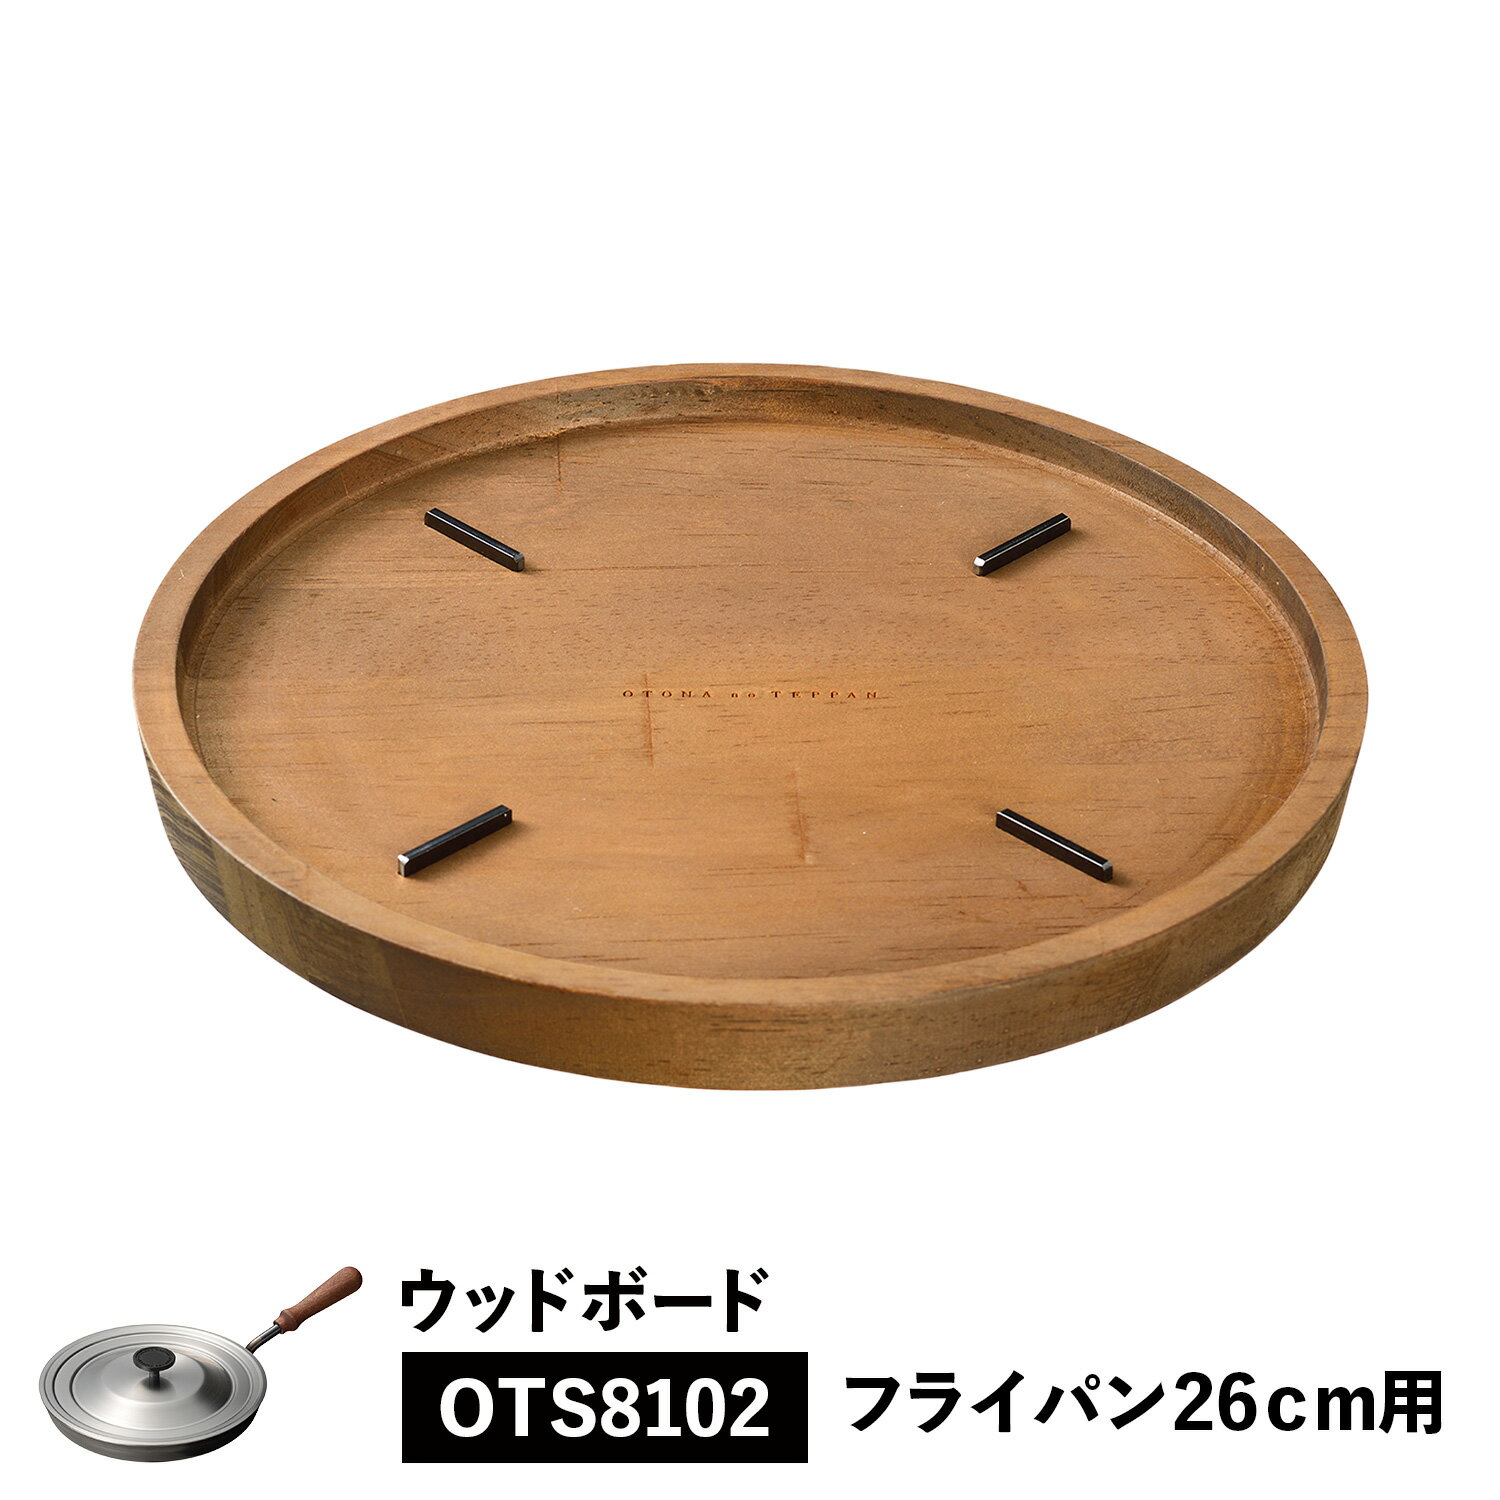 大人の鉄板 WOOD BOARD ウッドボード トレイ 鍋敷き お盆 フライパン専用 木製 日本製  ...